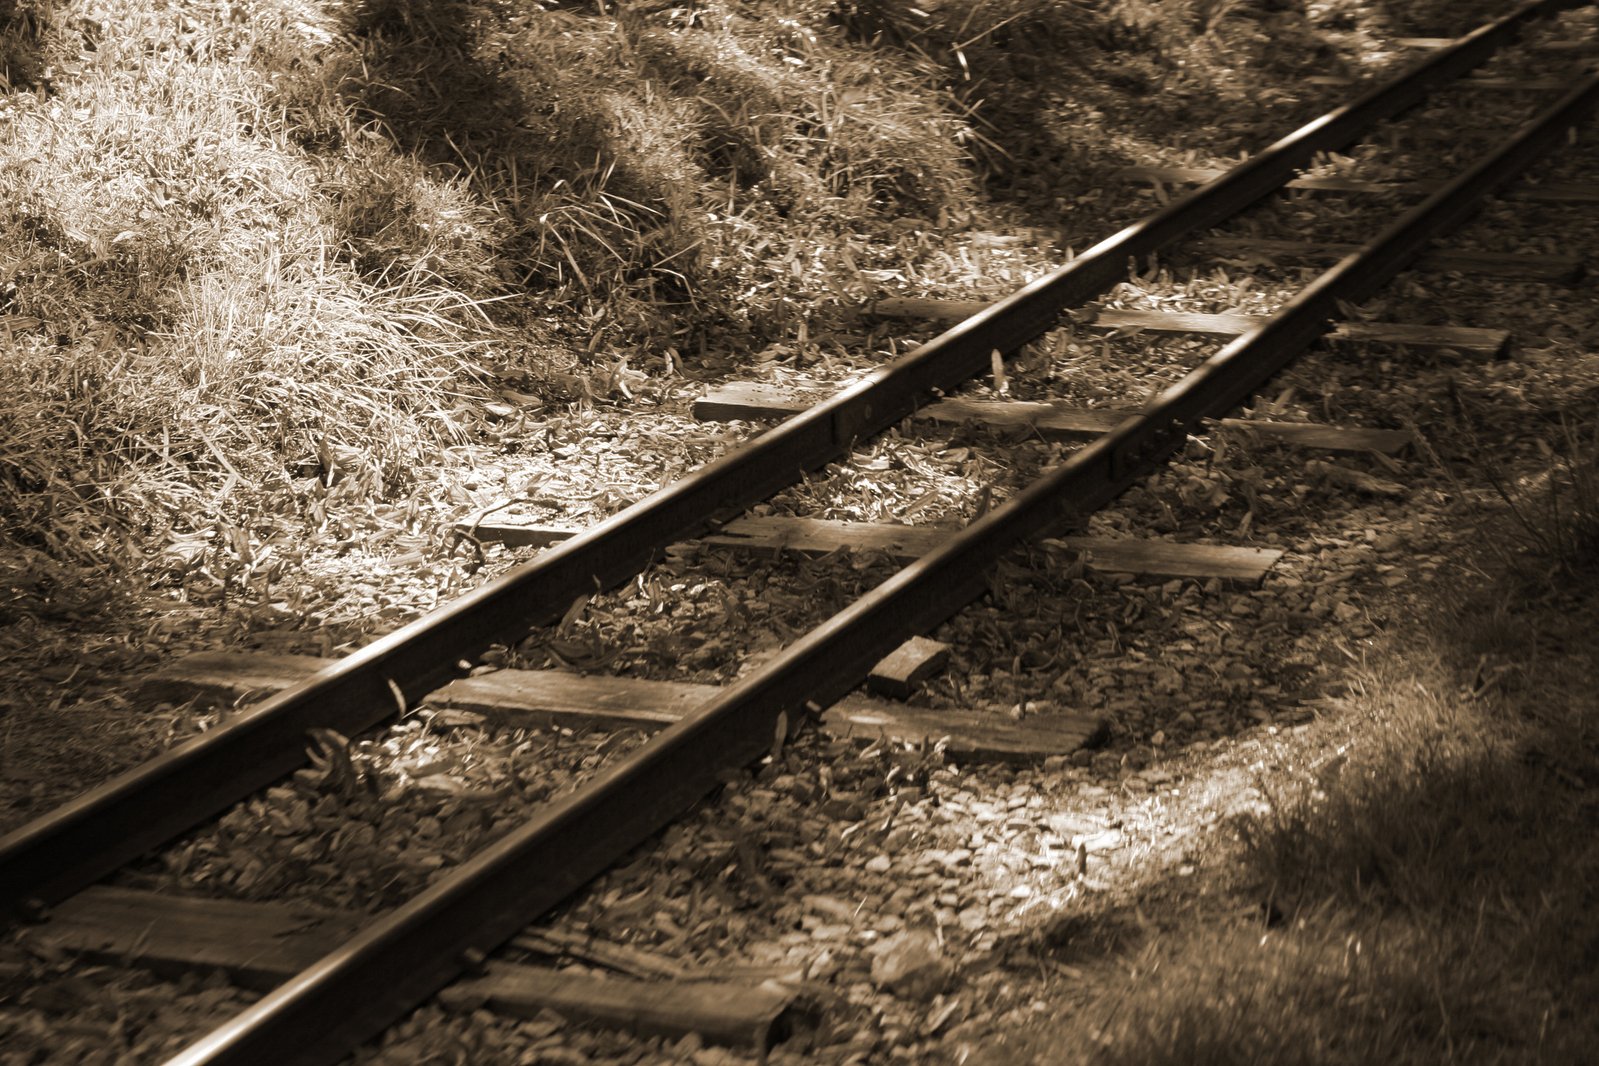 sepia pograph of train tracks in a grassy area